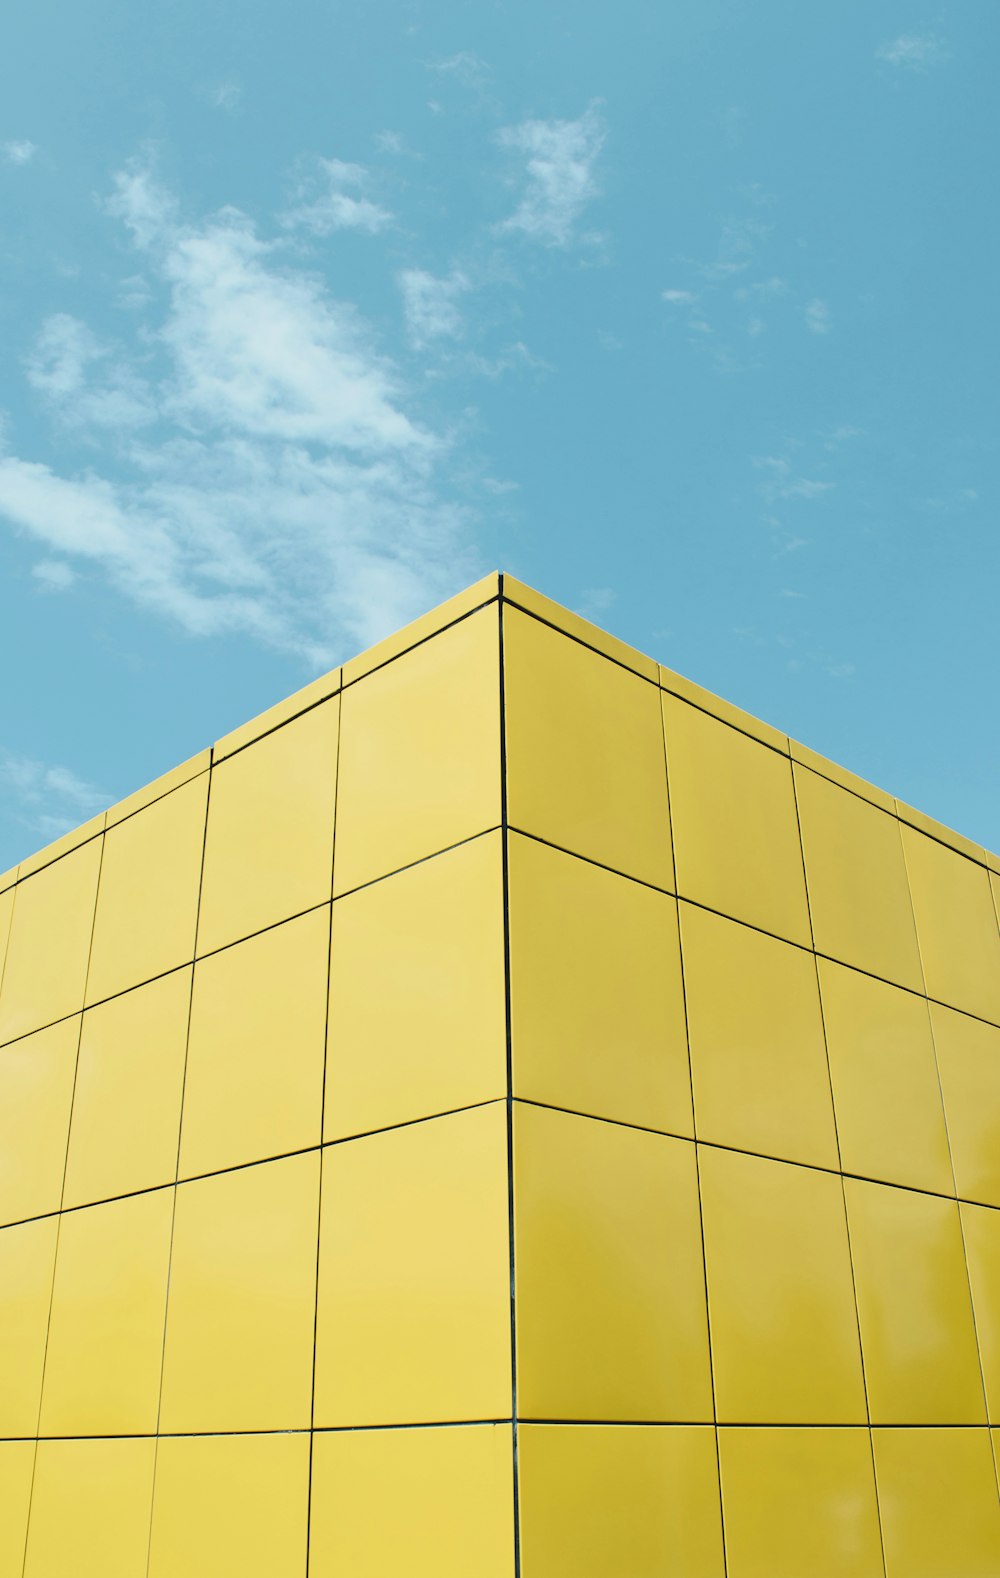 Edificio amarillo bajo el cielo azul durante el día